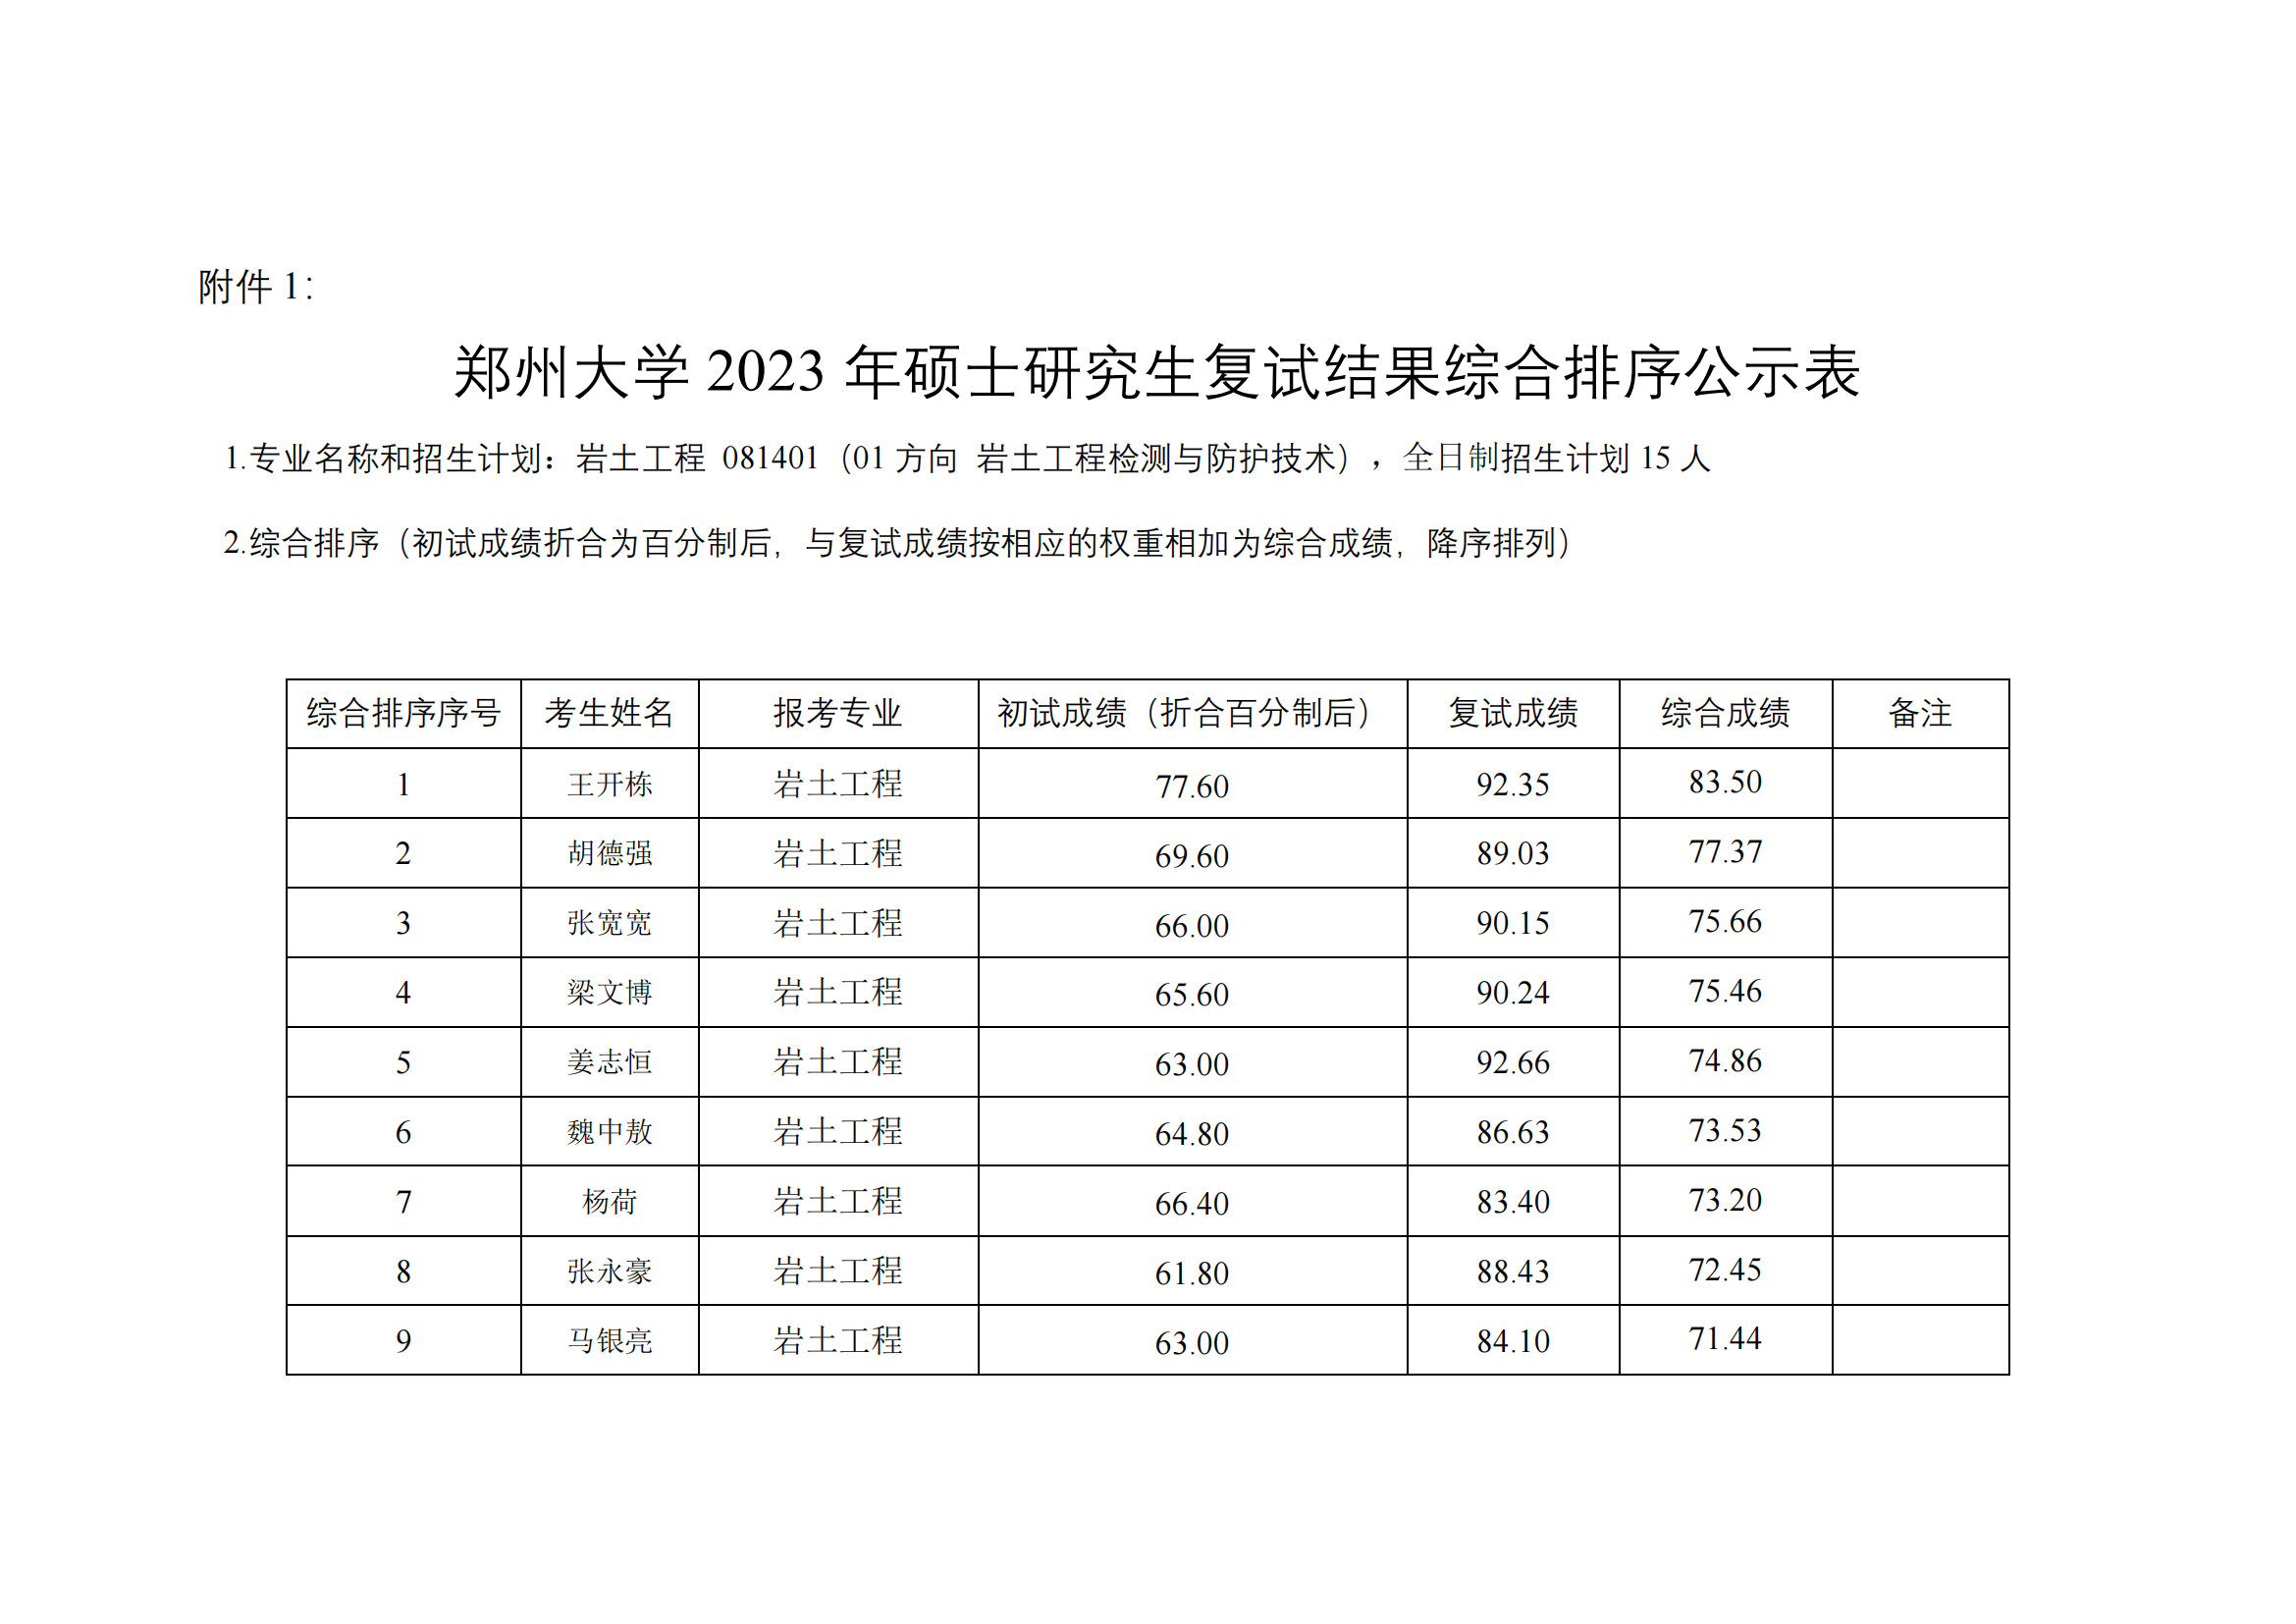 郑州大学水利与土木工程学院（原水利科学与工程学院专业方向）－2023年一志愿硕士研究生复试结果综合排序公示表-20230402(2)_00.png